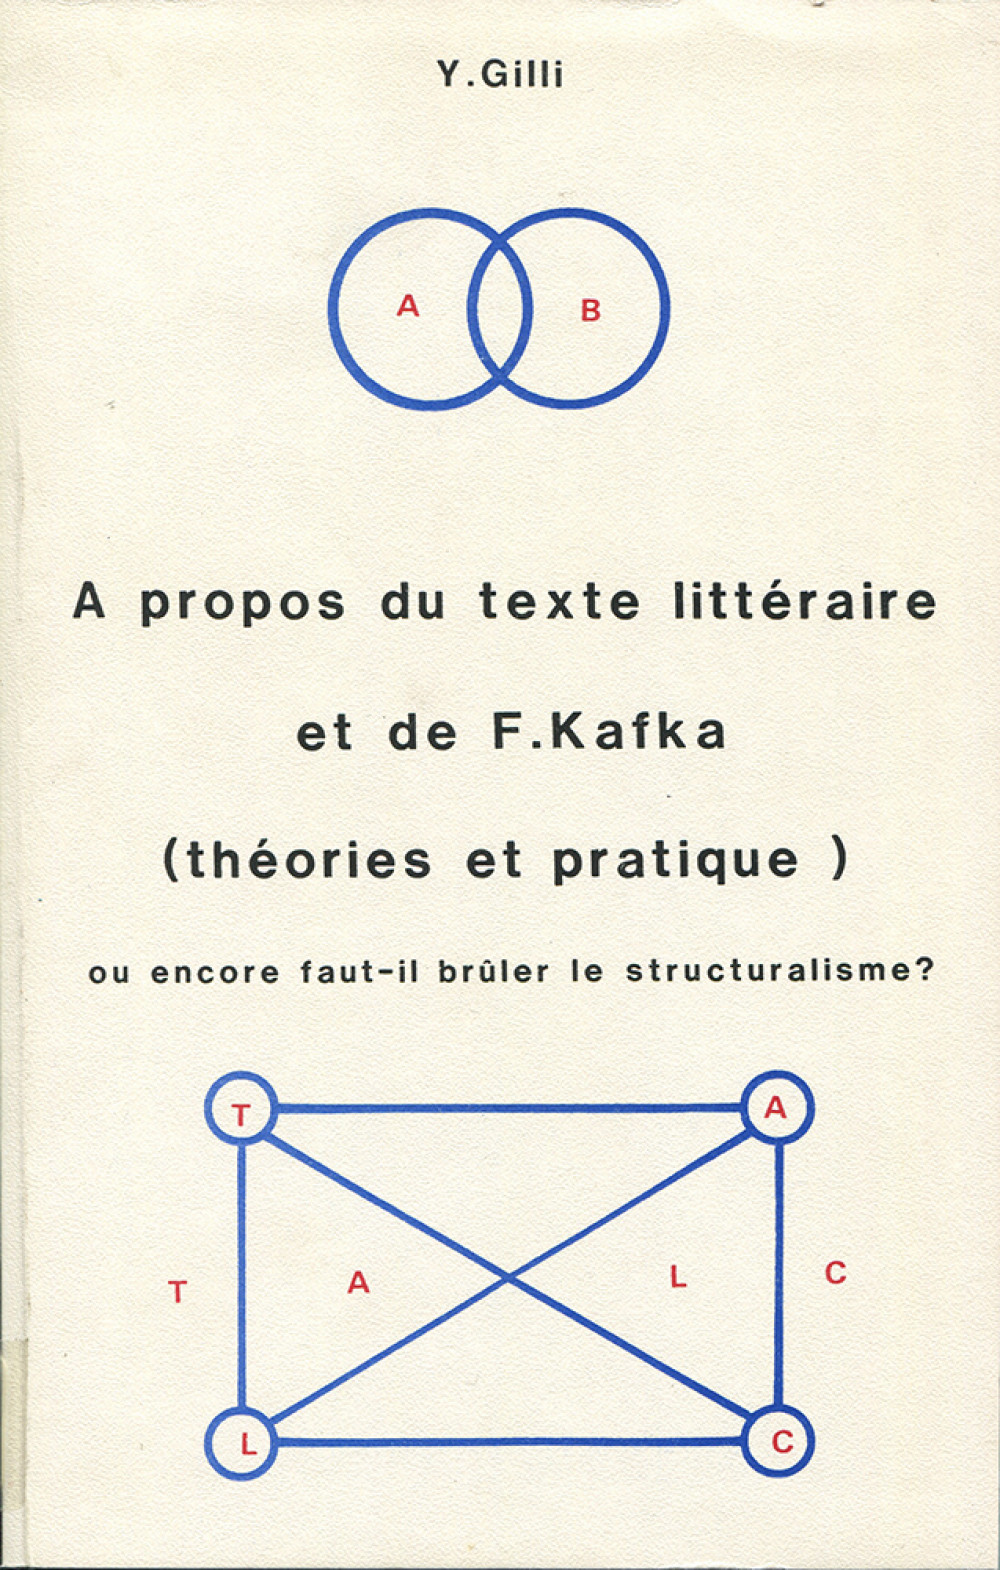 A propos du texte littéraire et de F. Kafka (théories et pratique)